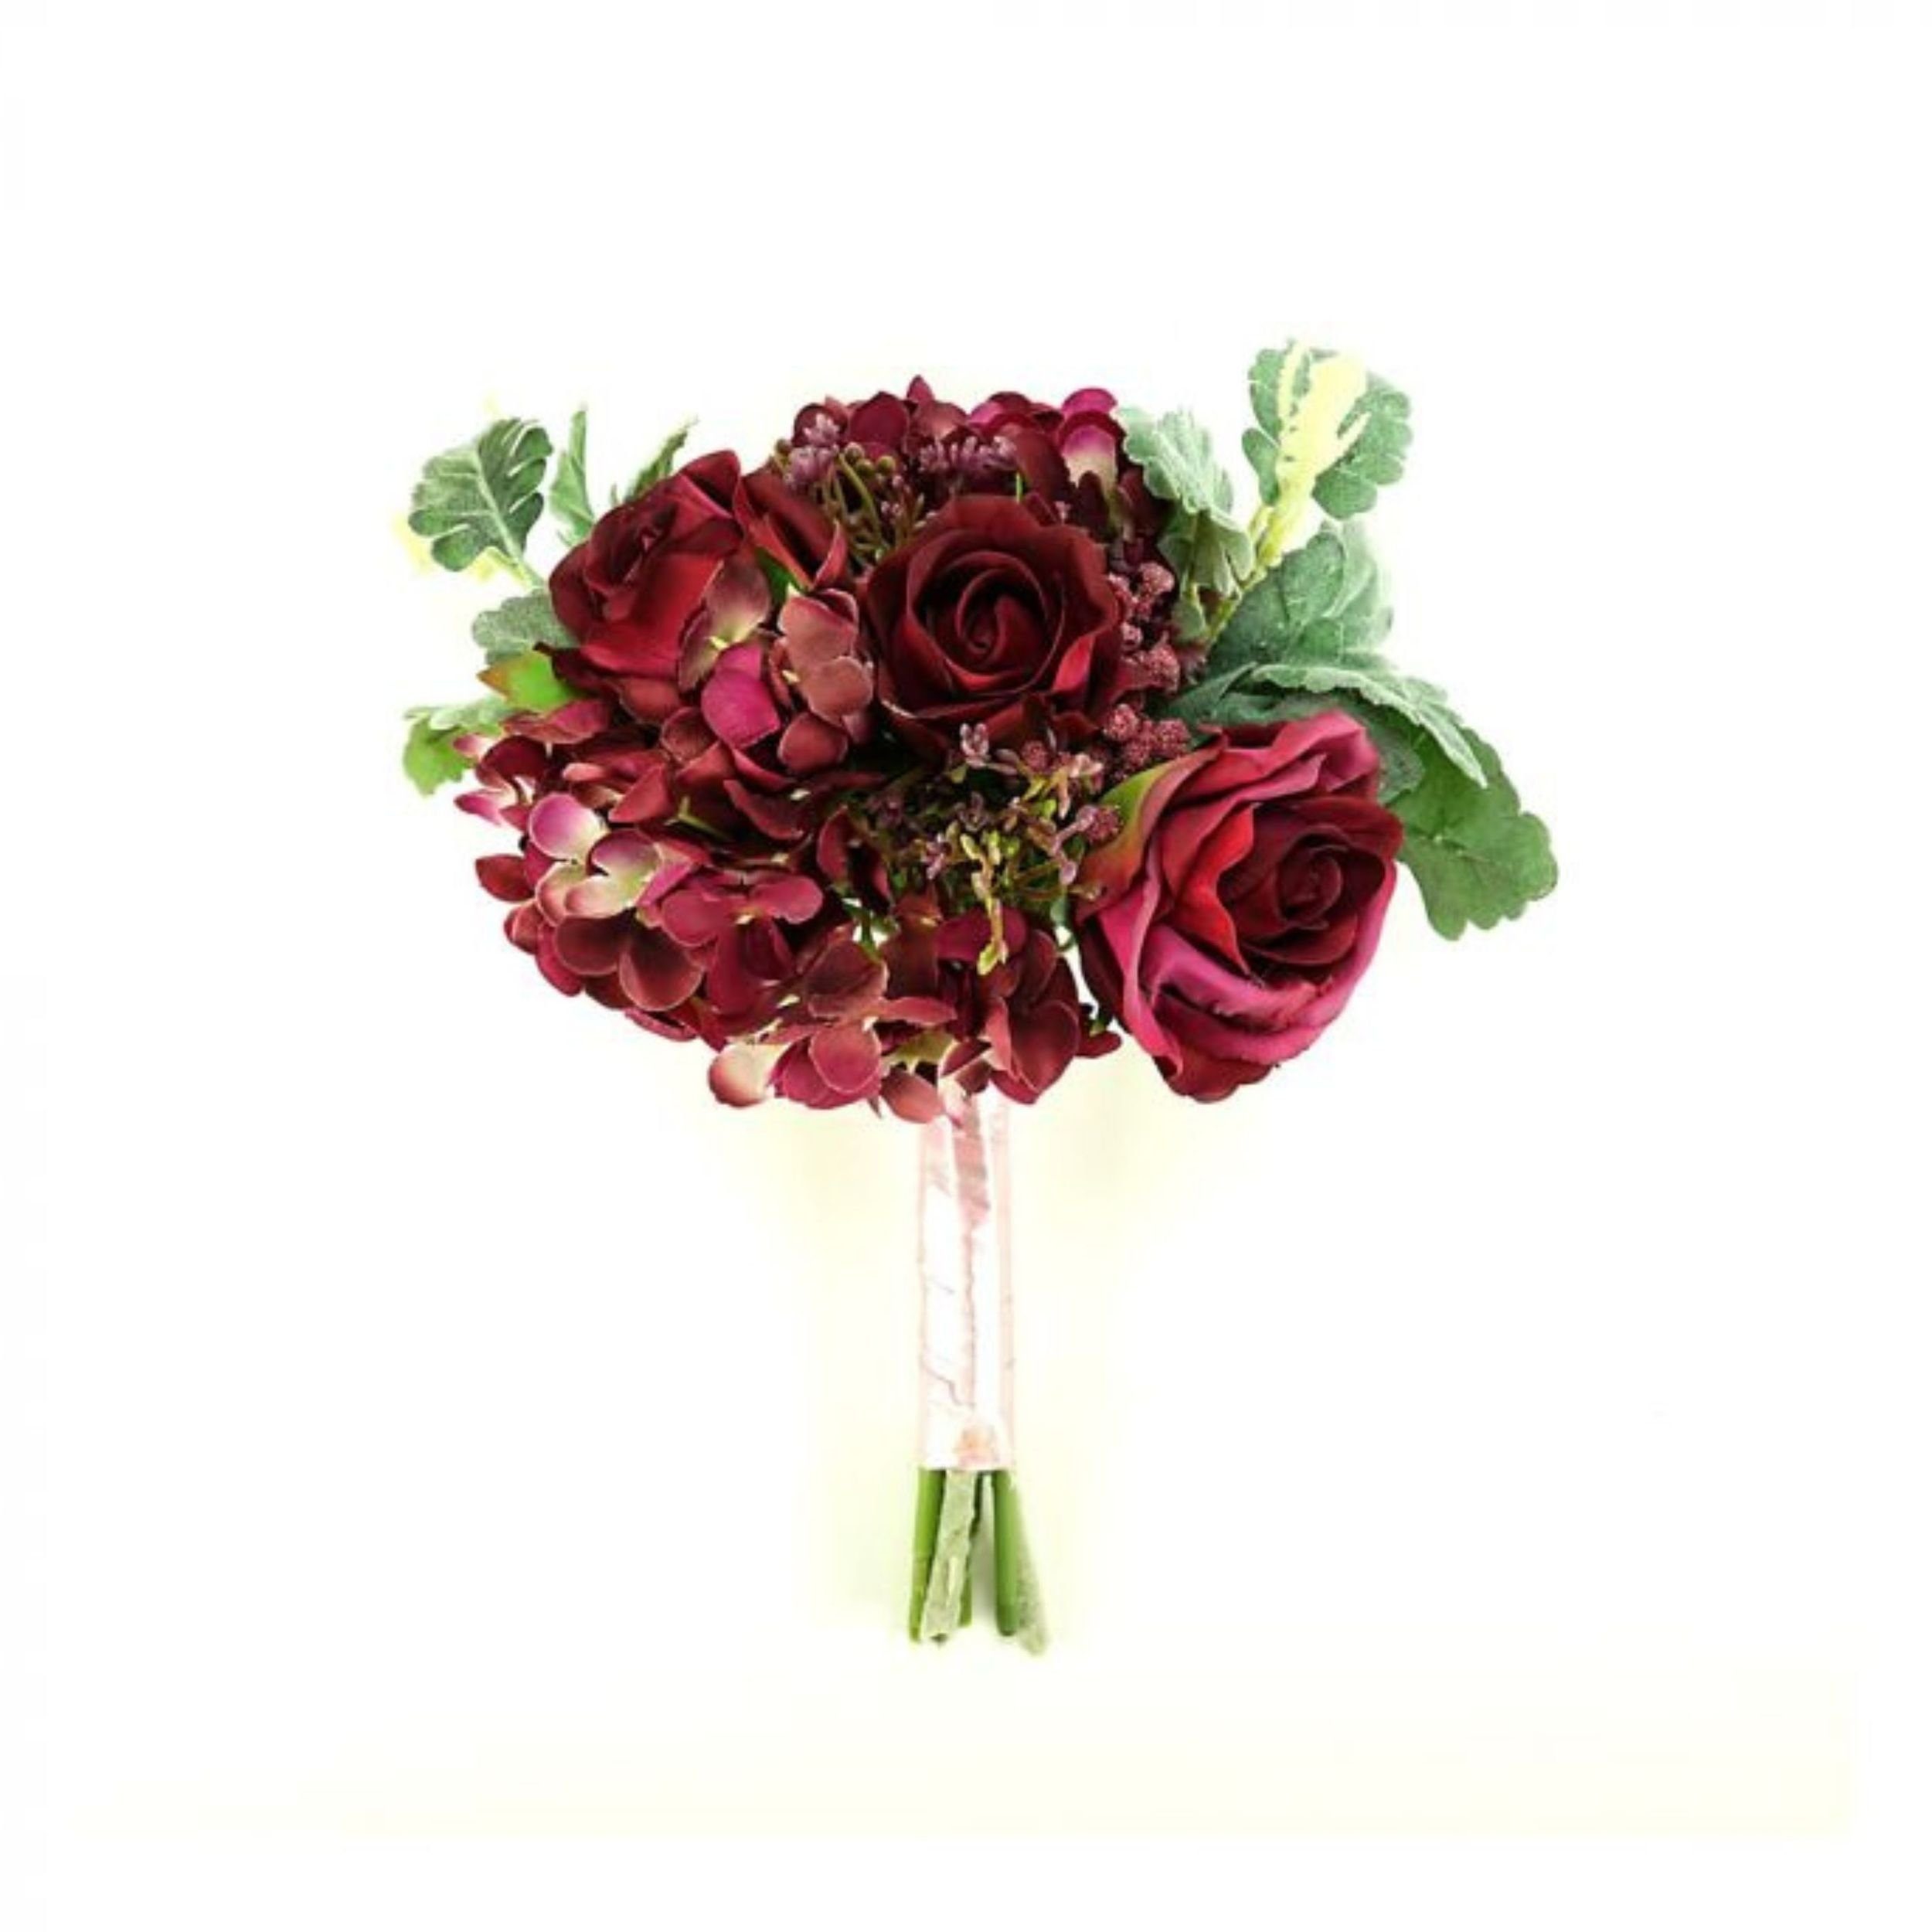 Kunstblume Blumenstrauß Blumenbouquet mit Hortensien und Rosen Weinrot 28cm, Flor & Decor Import GmbH